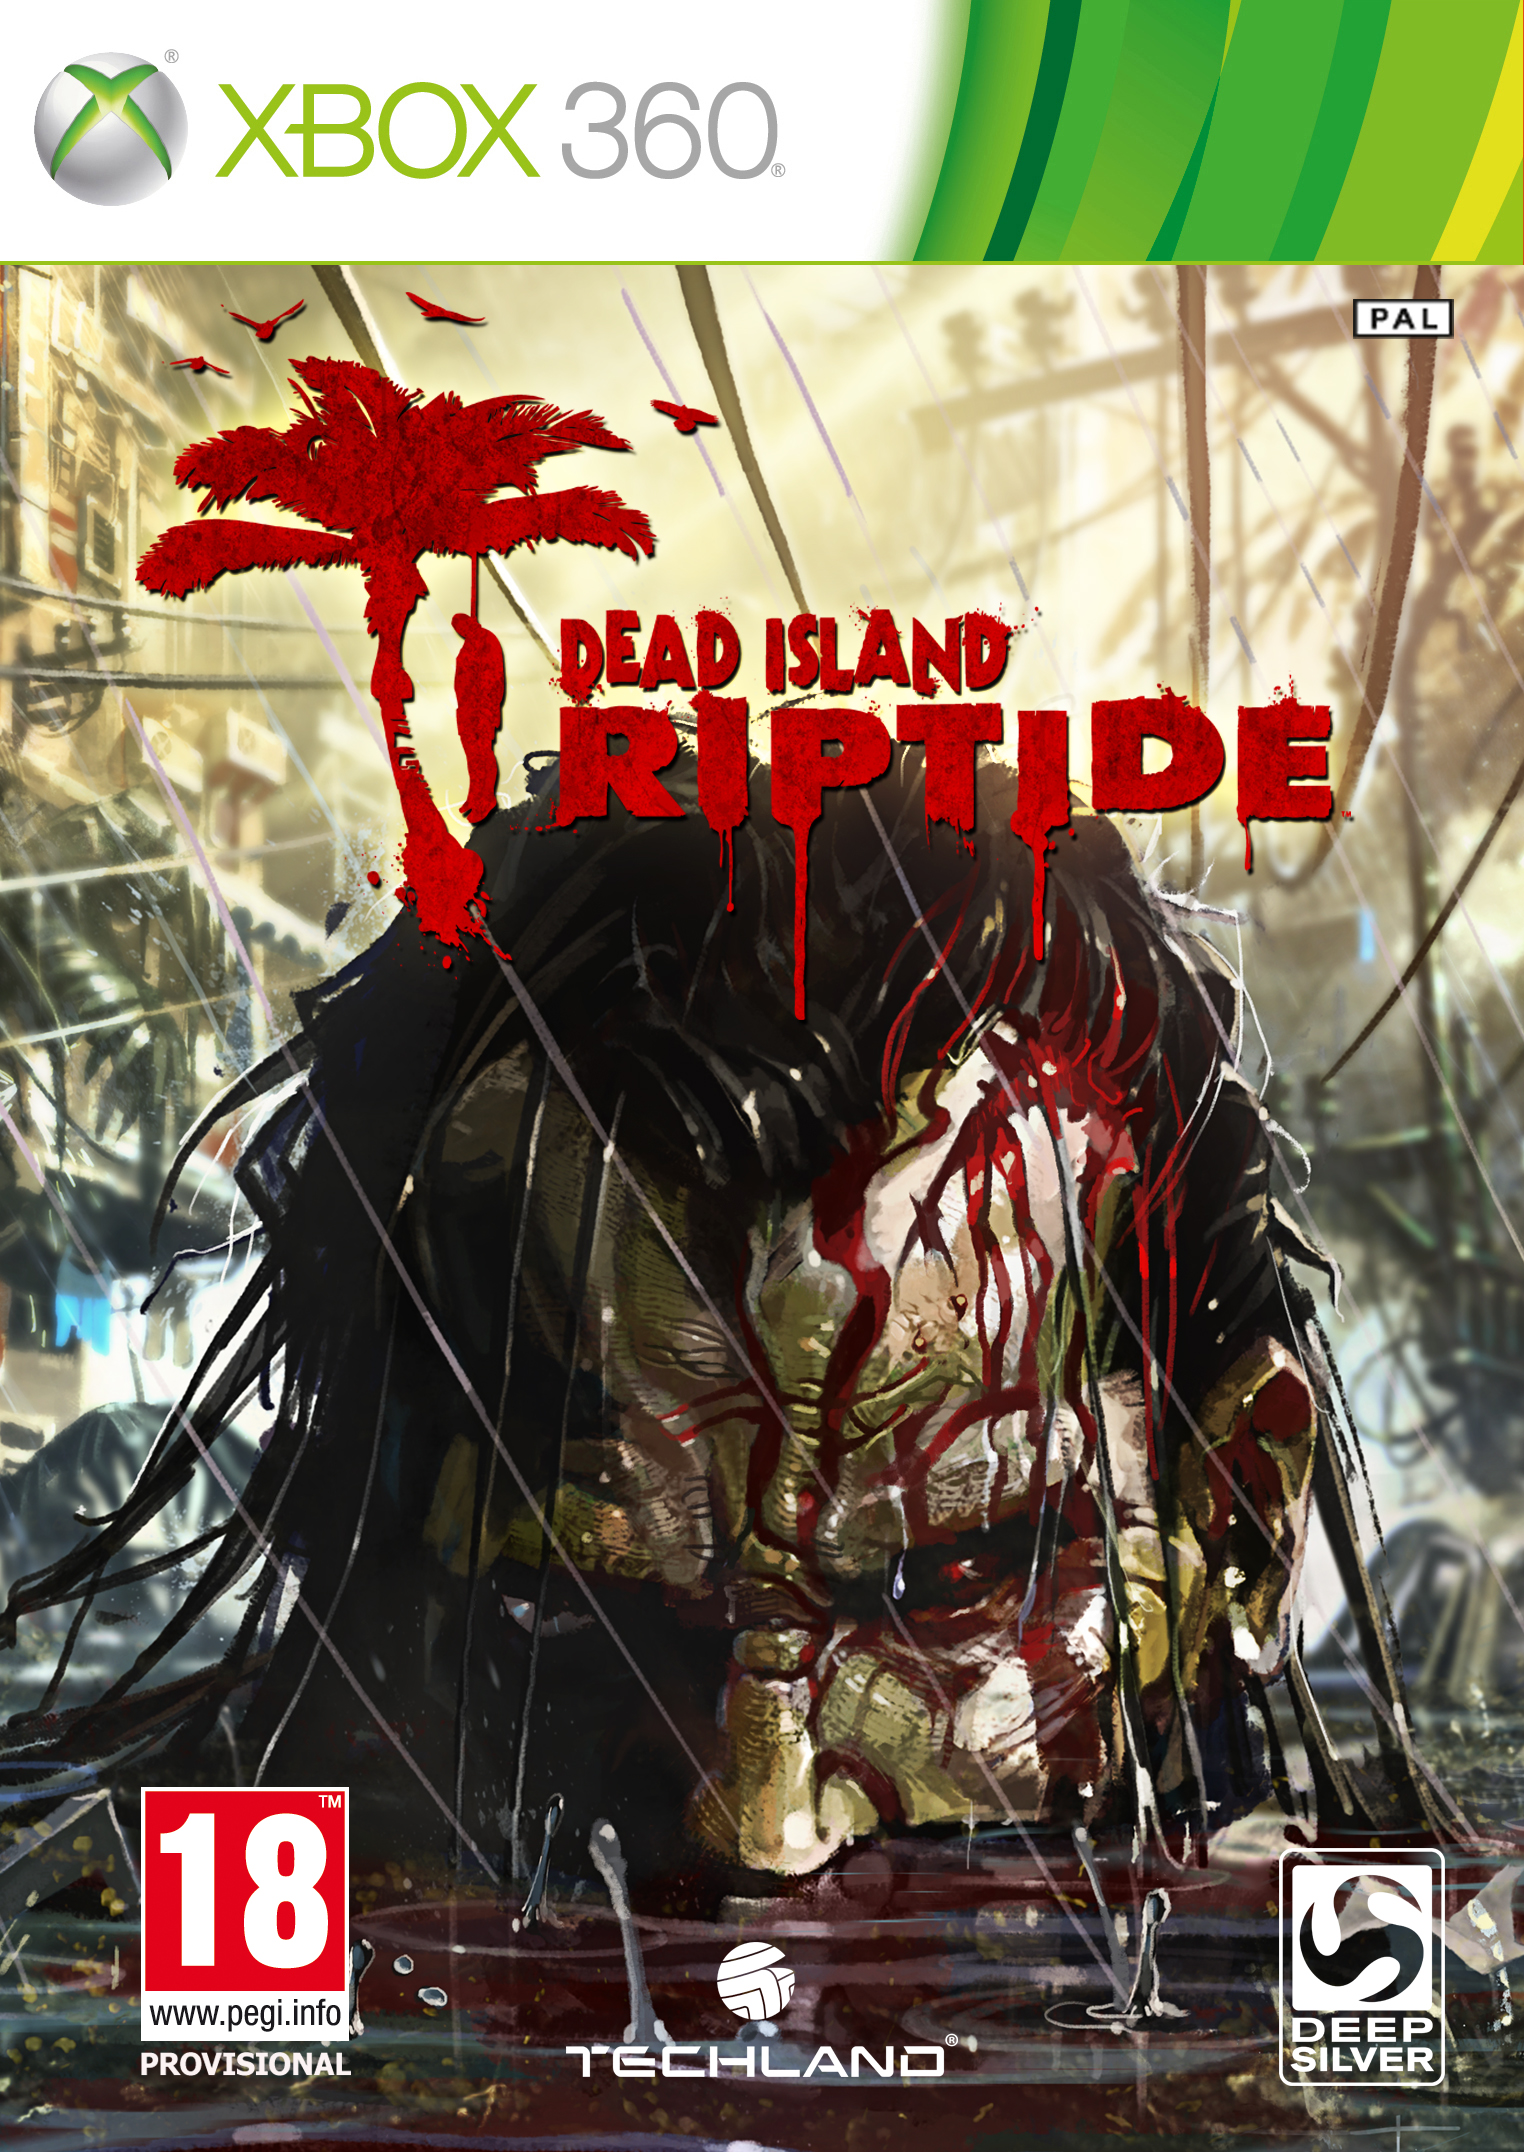 XBOX 360 - Dead Island Riptide